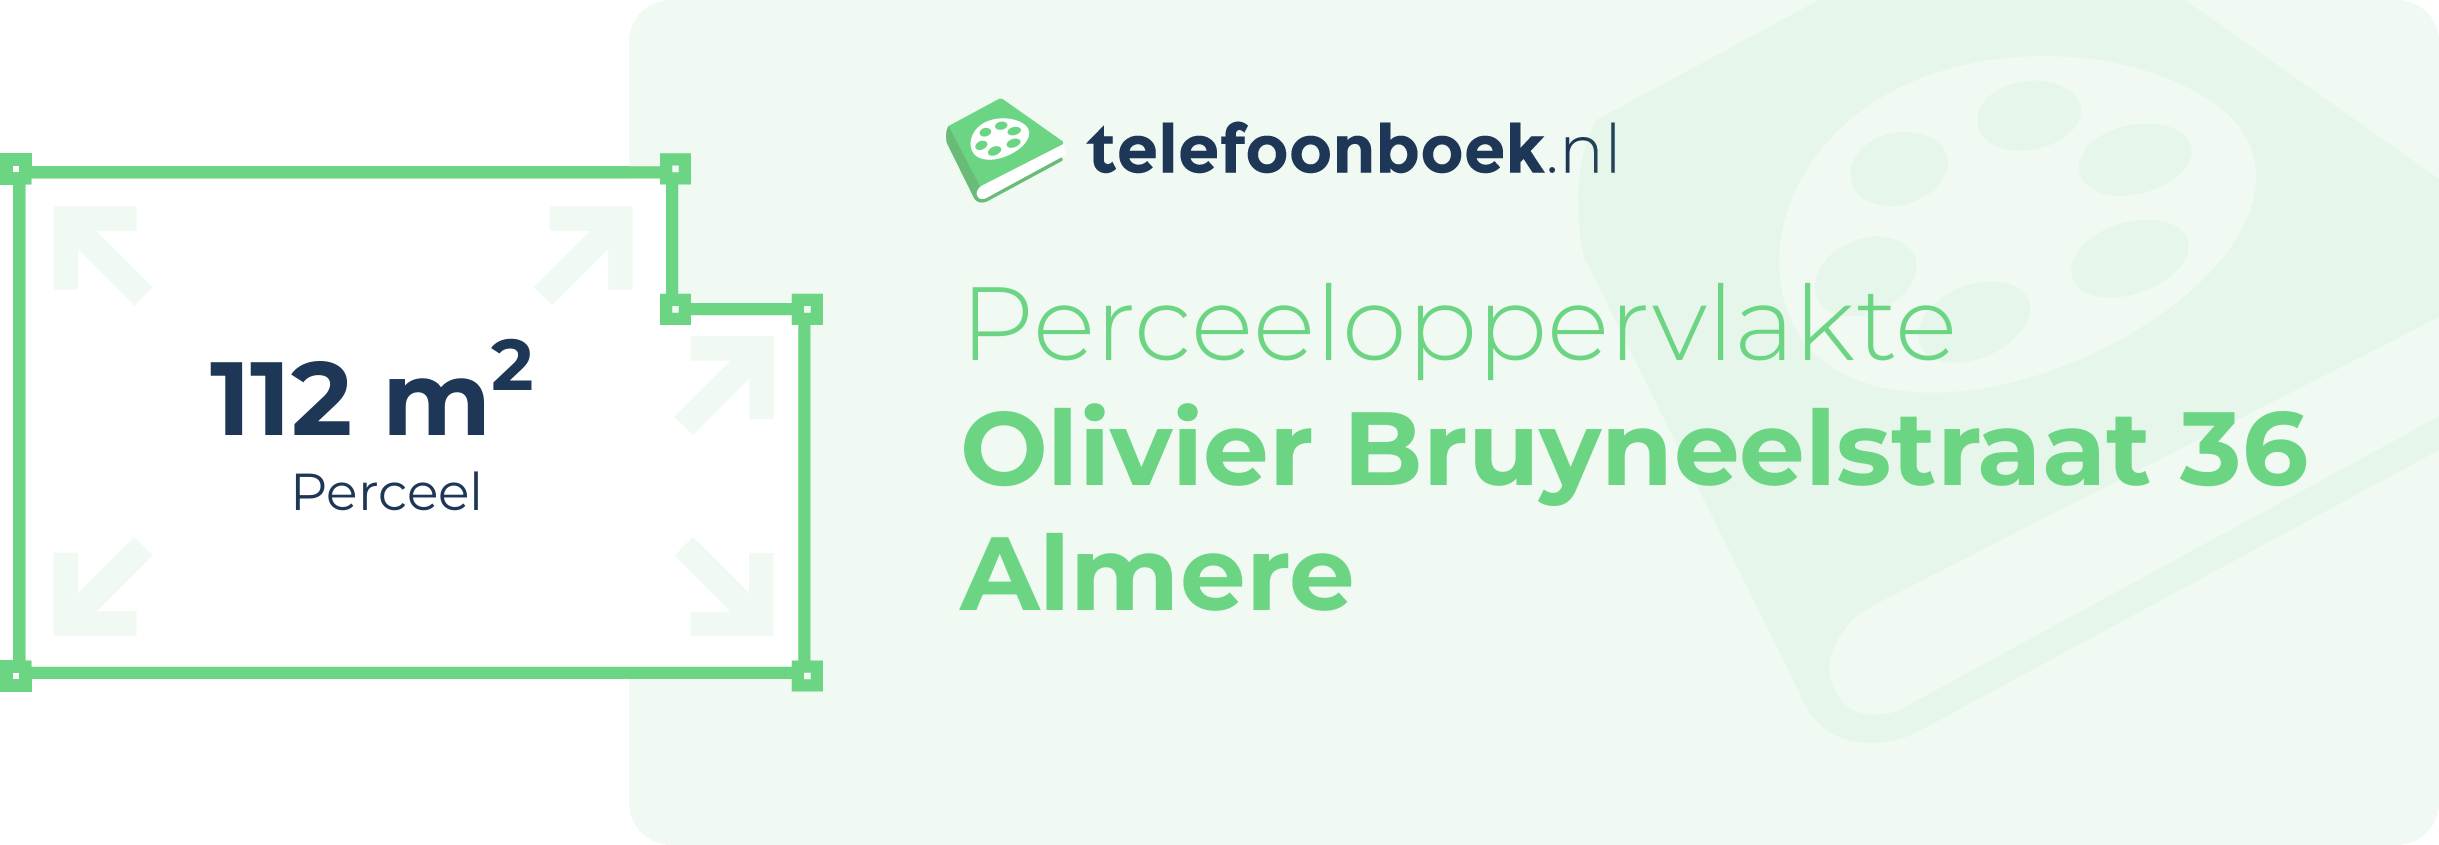 Perceeloppervlakte Olivier Bruyneelstraat 36 Almere